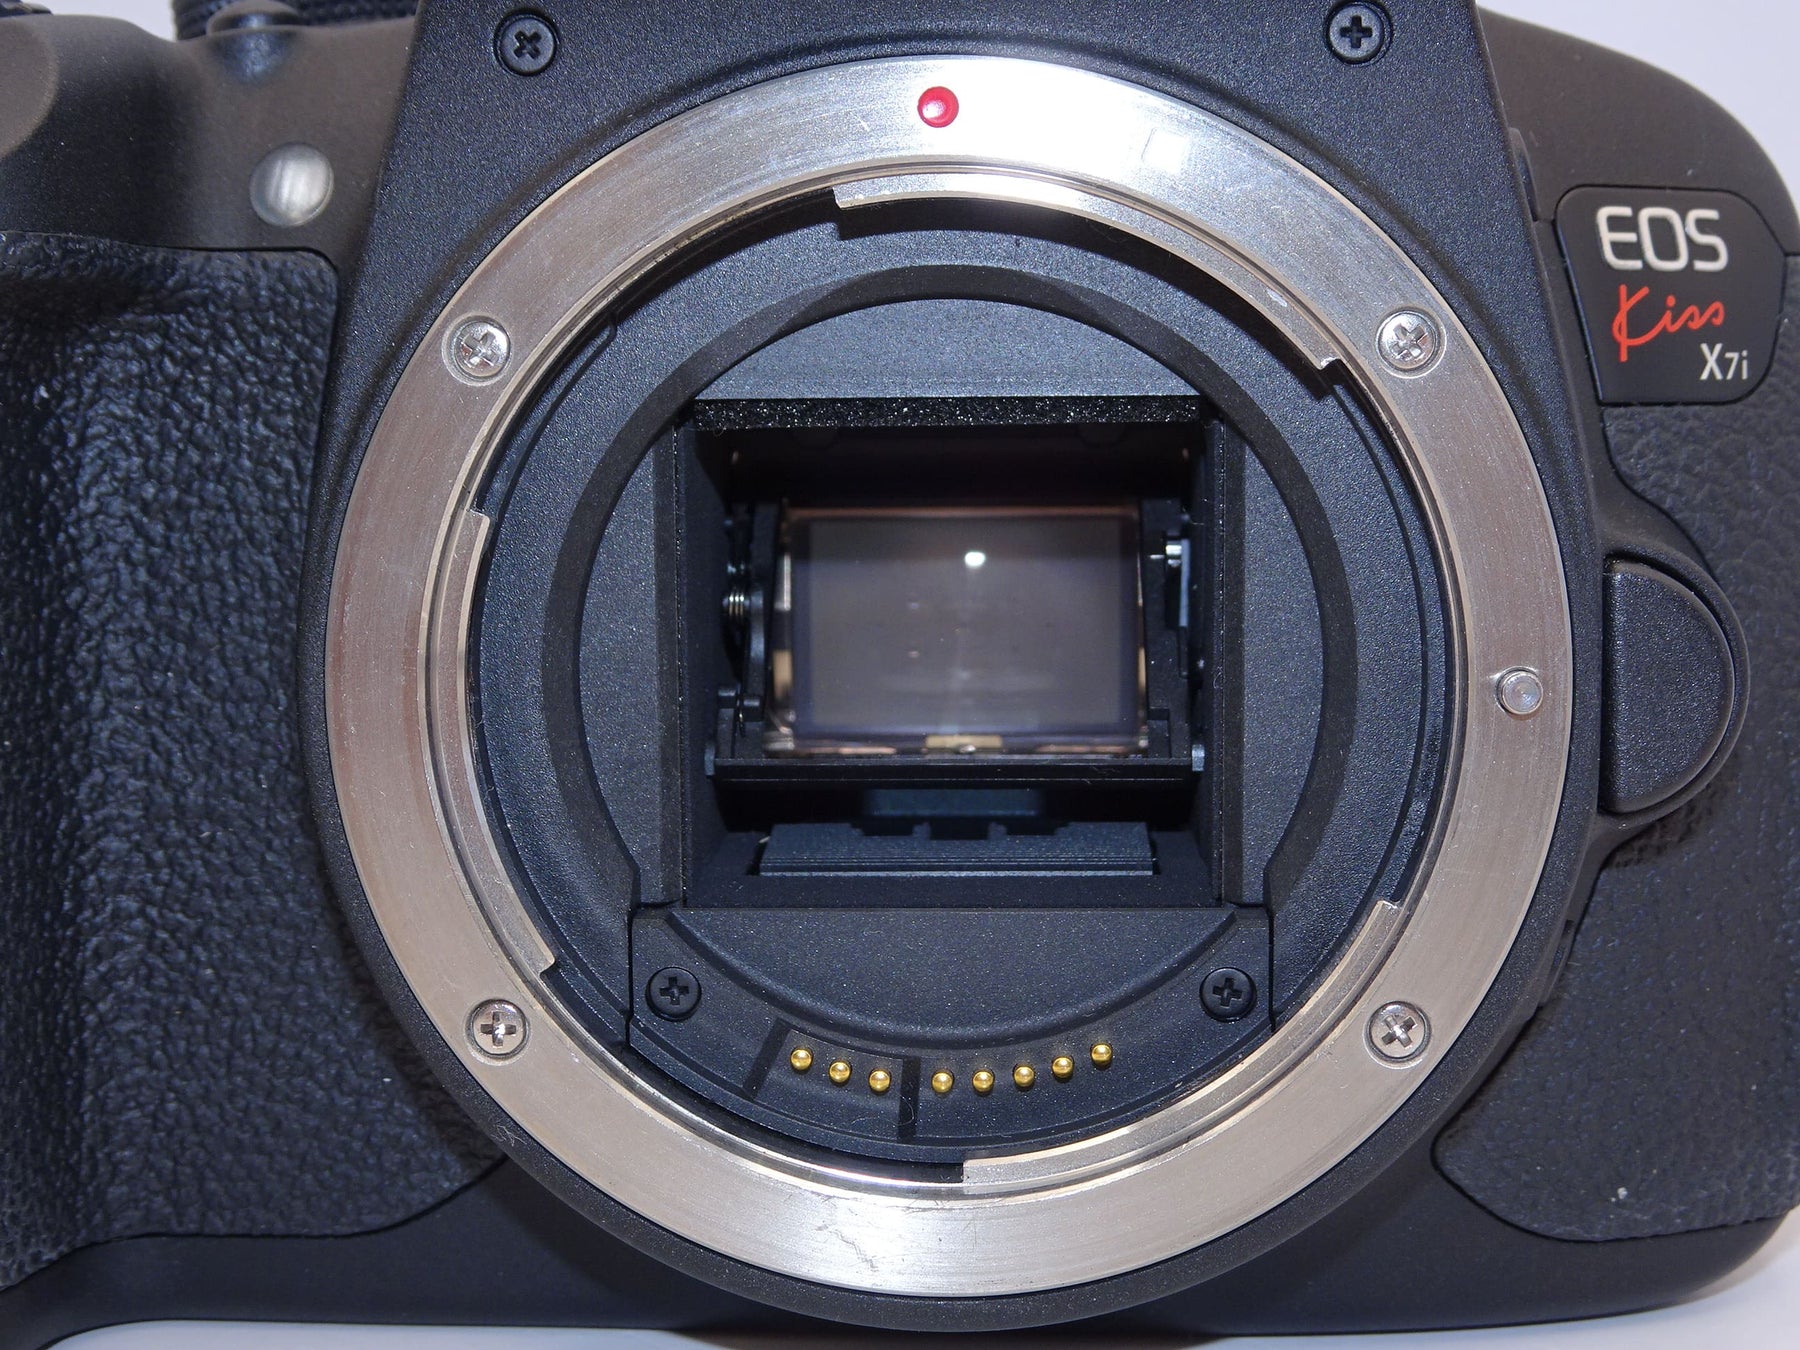 【外観特上級】Canon デジタル一眼レフカメラ EOS Kiss X7i ボディ